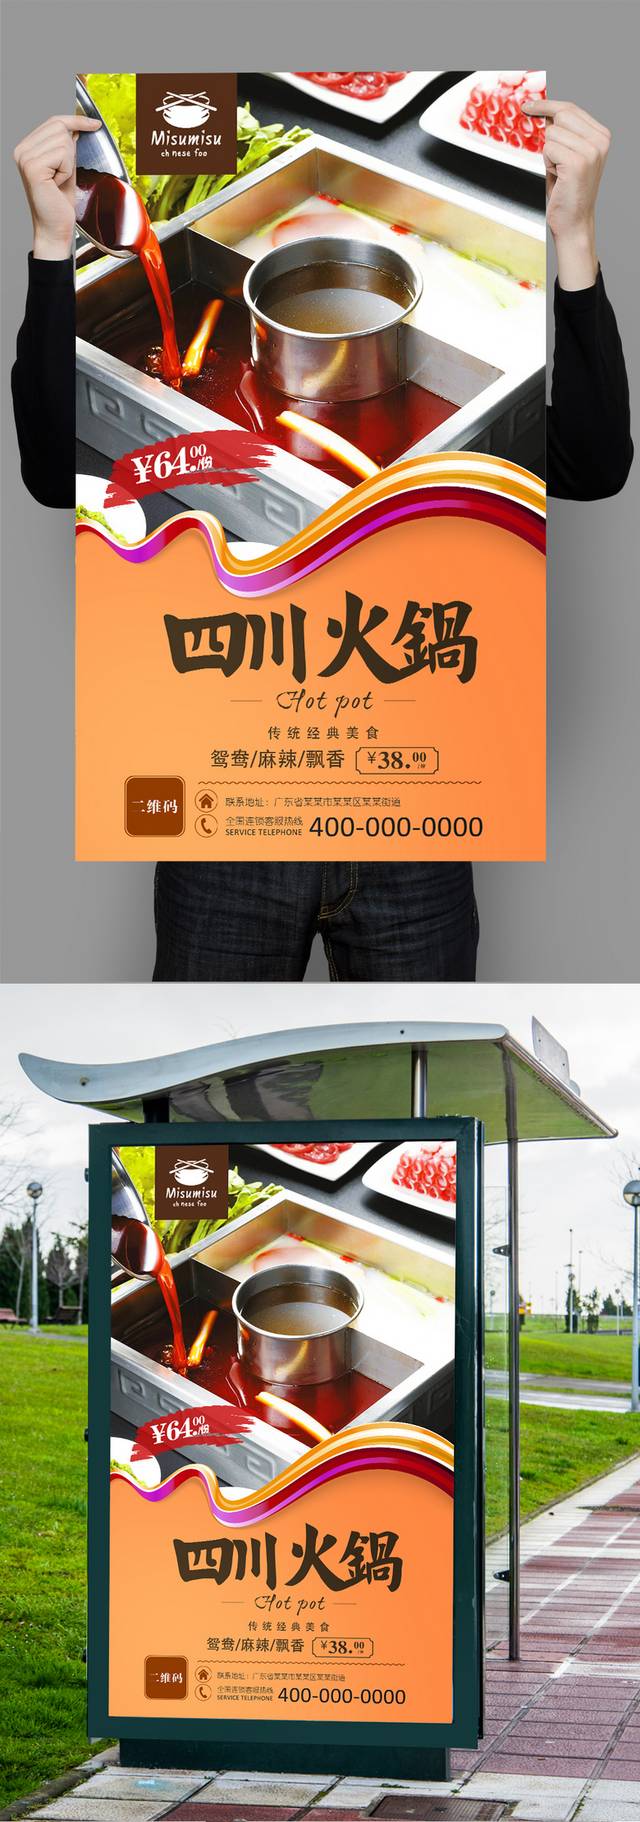 四川火锅美食宣传海报设计